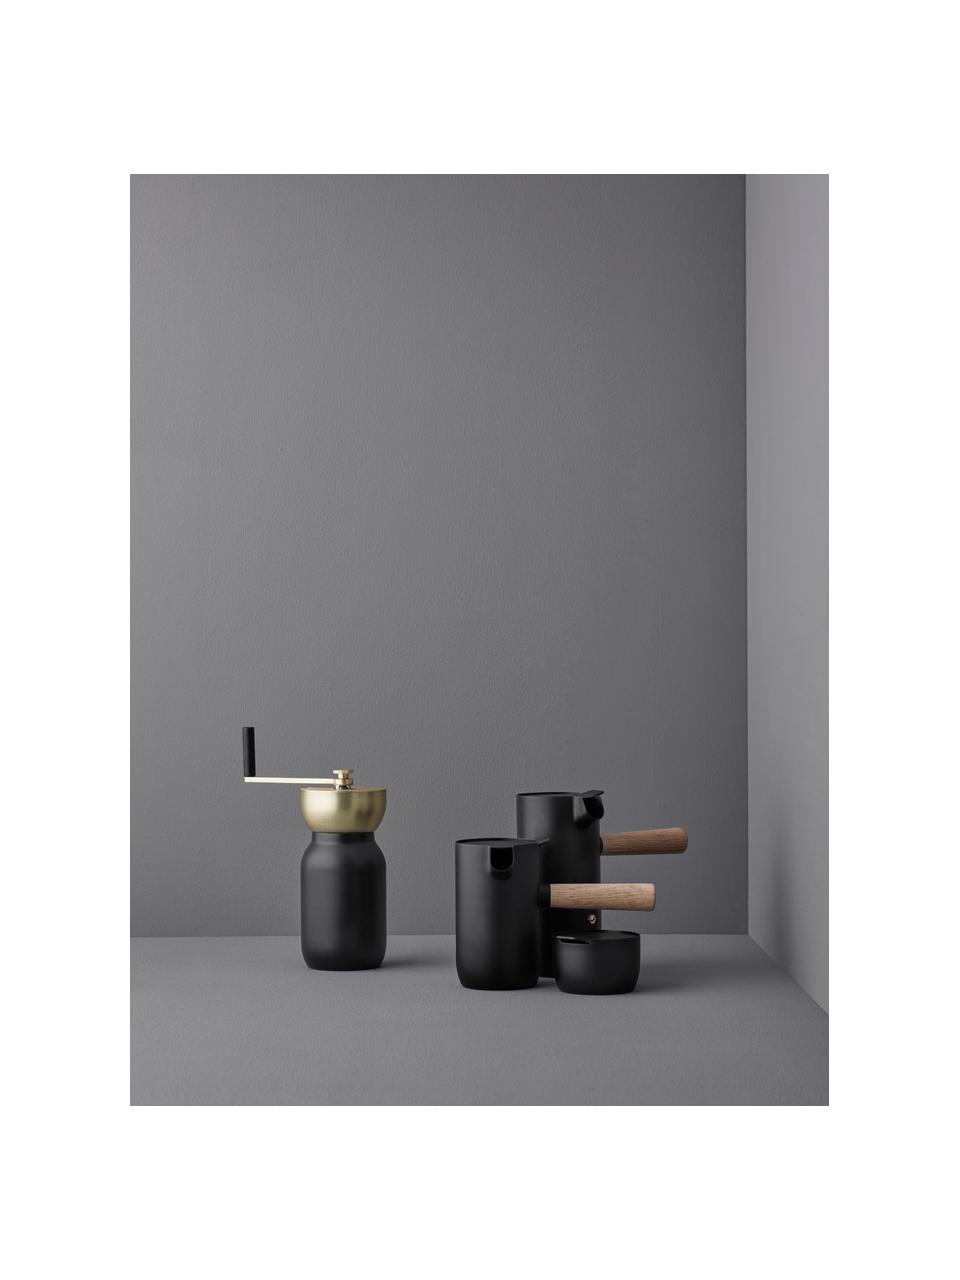 Koffiemolen Collar in zwart/goudkleurig, Edelstaal met teflon coating, messing, Zwart, Ø 10 x H 18 cm